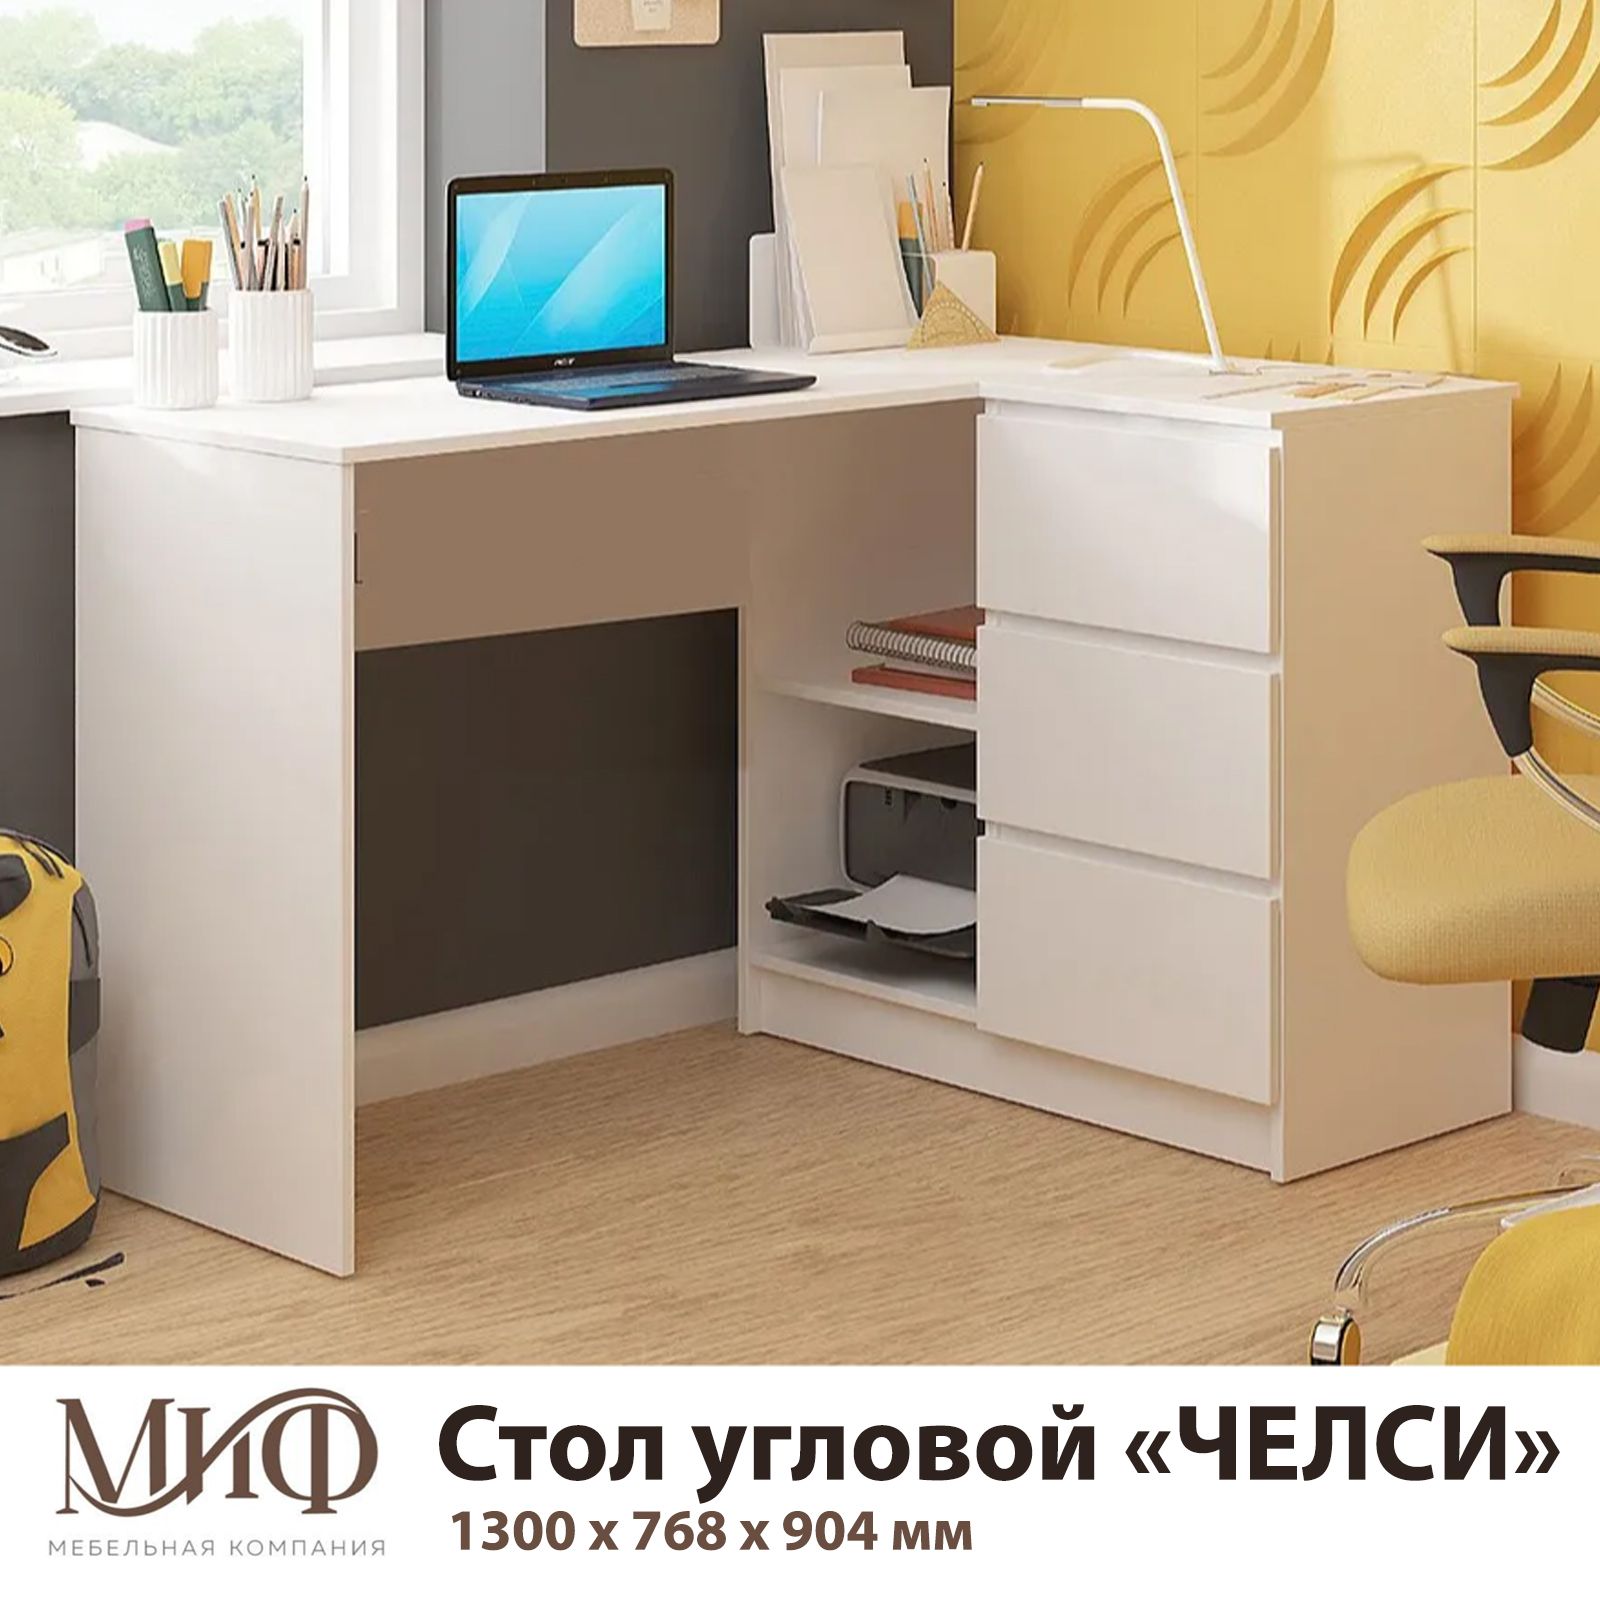 Купить письменный стол в москве для школьника